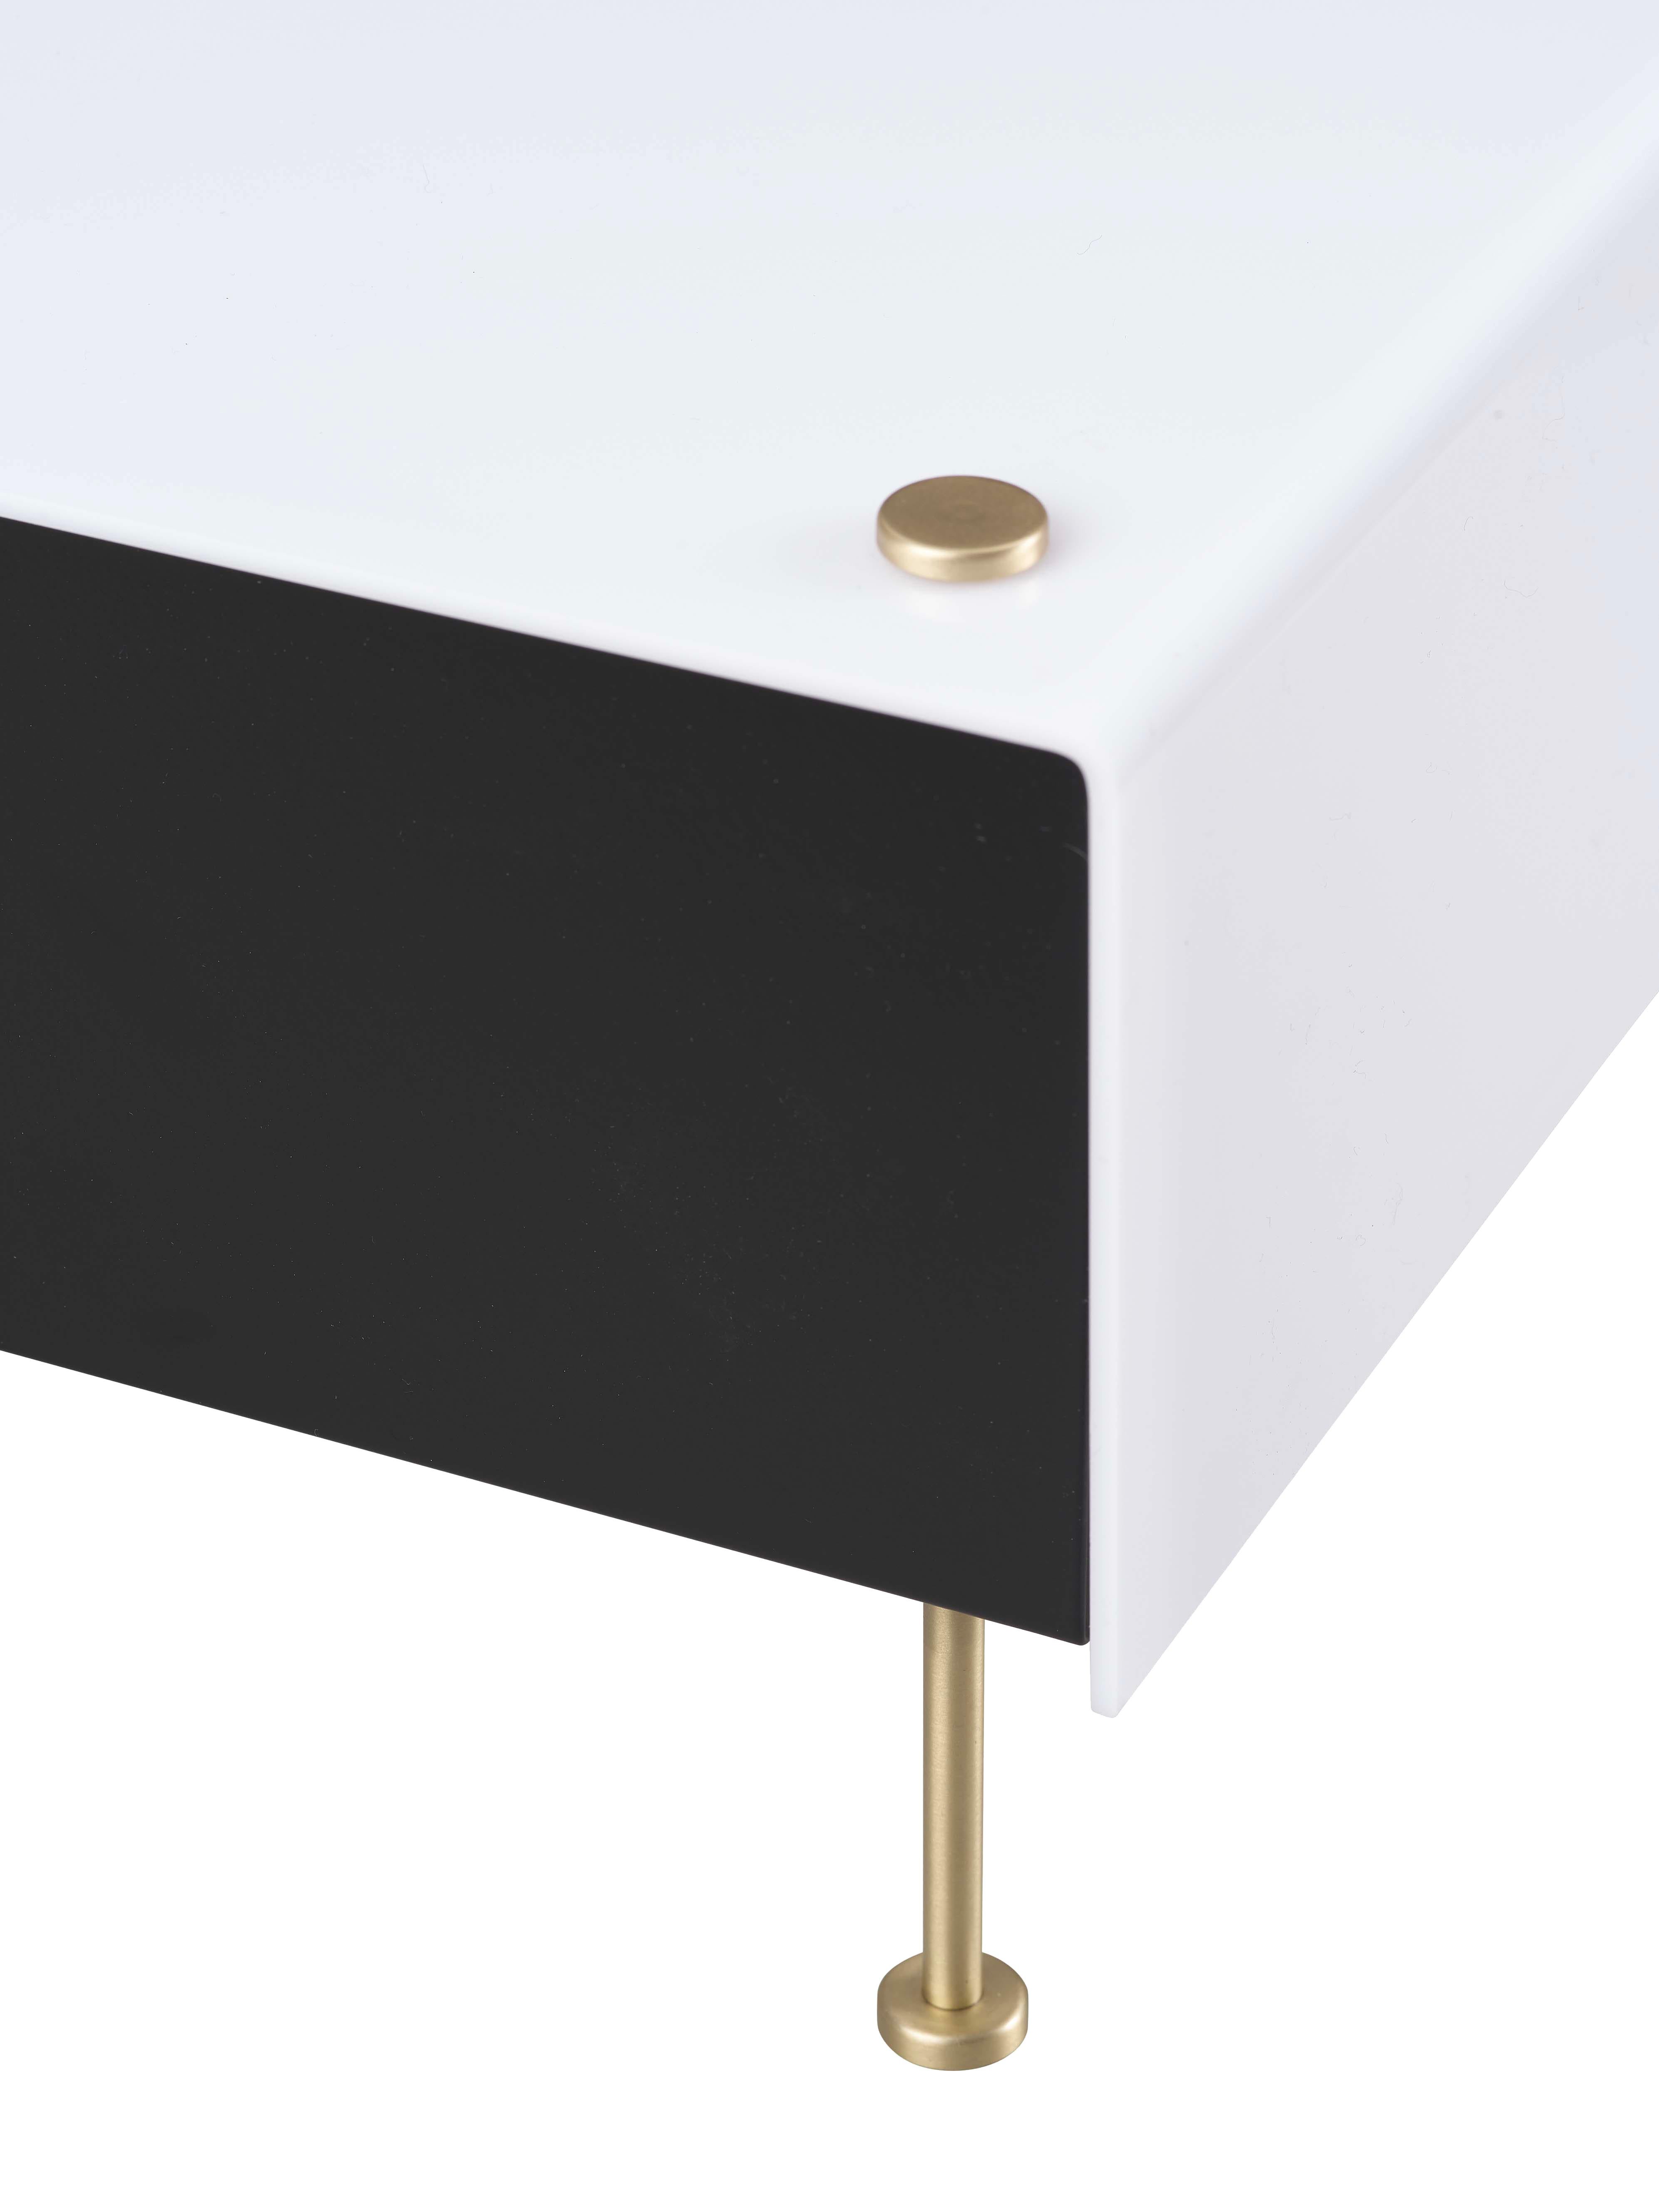 Contemporary Pierre Guariche 'G60' Table Lamp for Sammode Studio For Sale